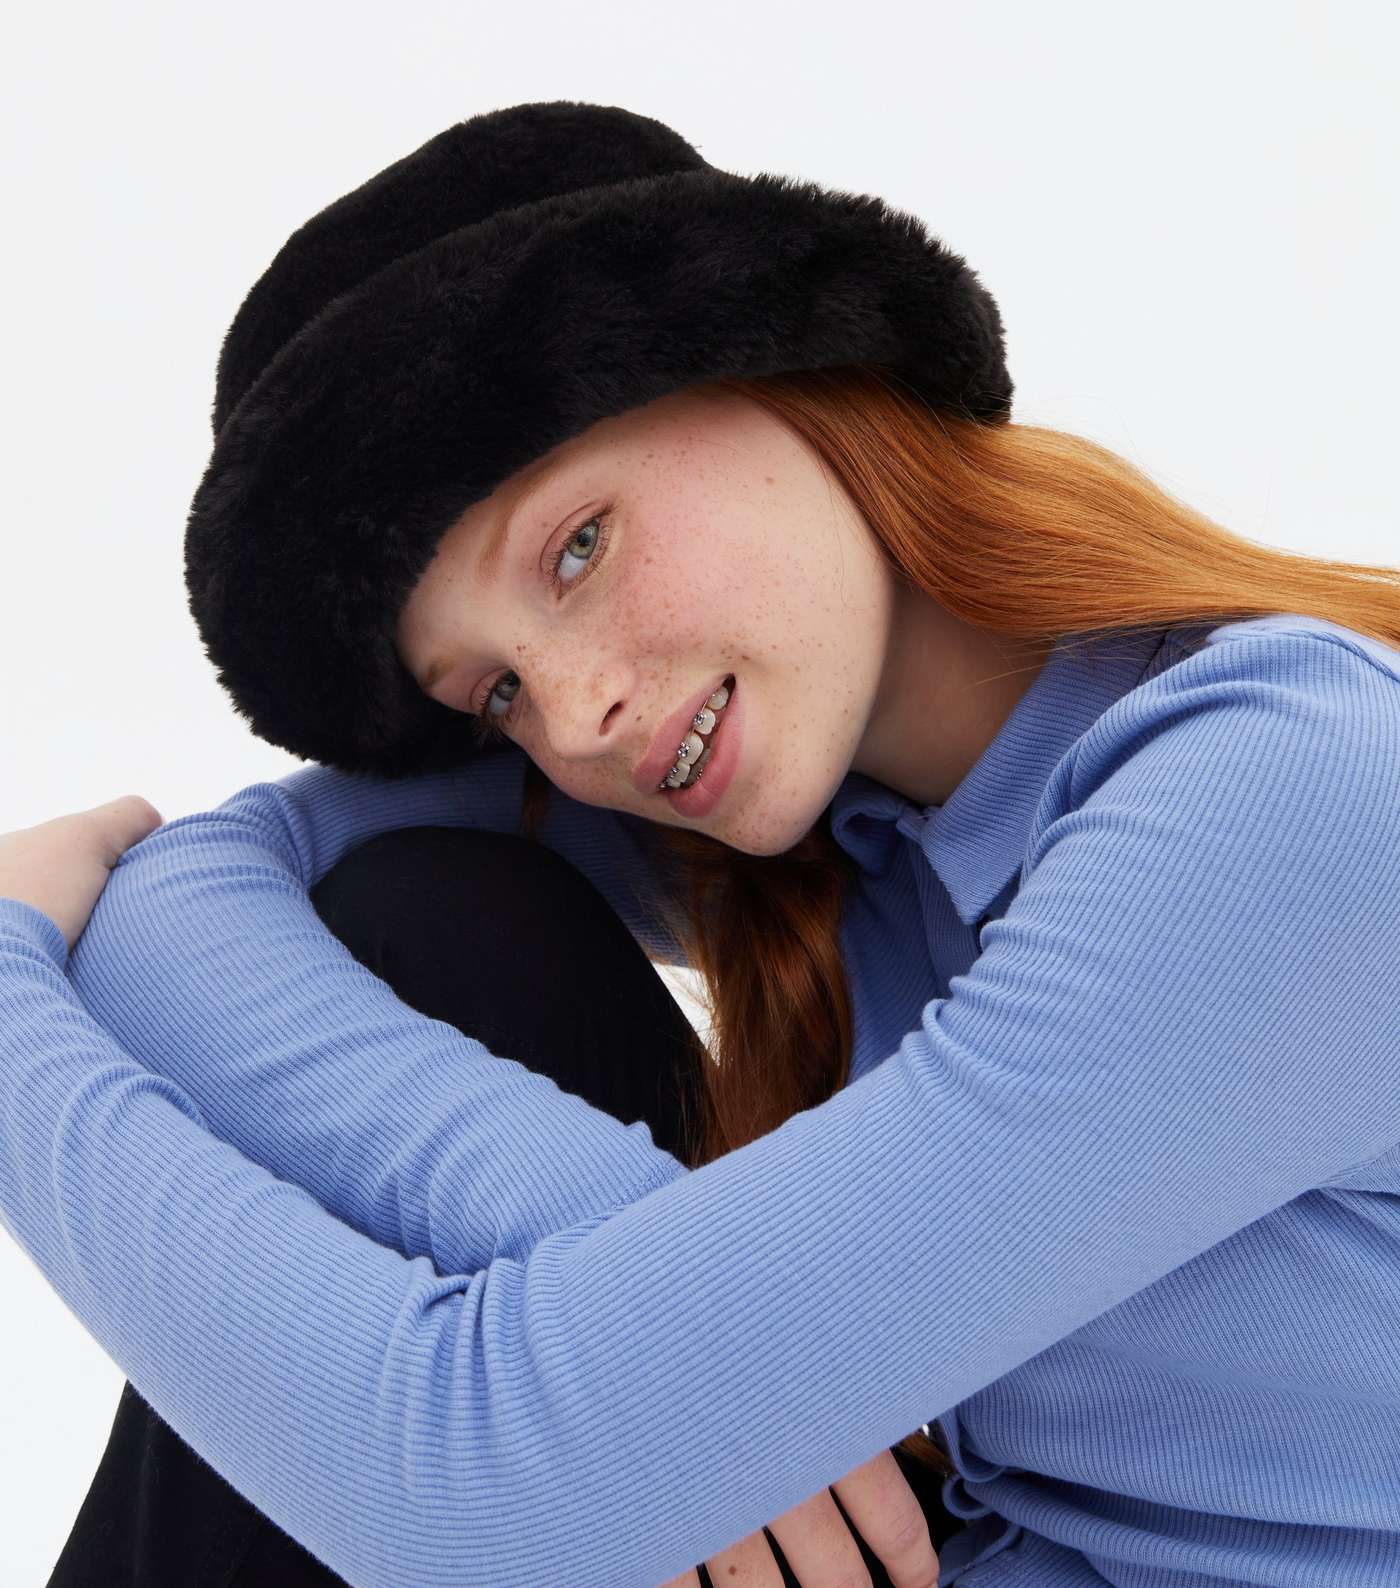 Girls Black Faux Fur Bucket Hat